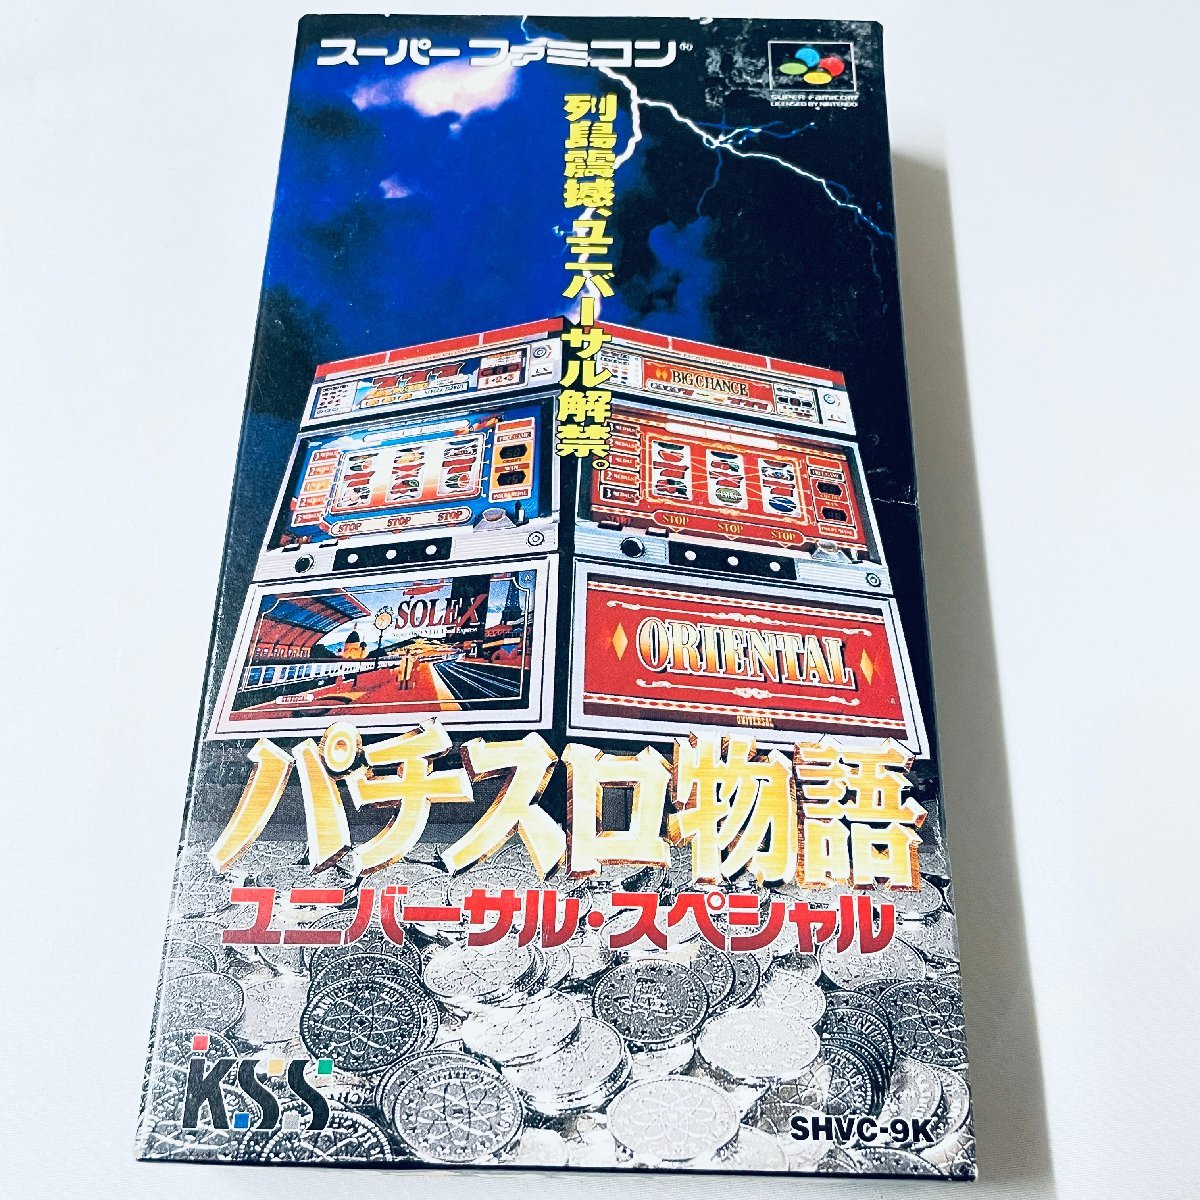 SFC Super Famicom soft игровой автомат история универсальный * специальный коробка мнение есть пуск проверка settled 